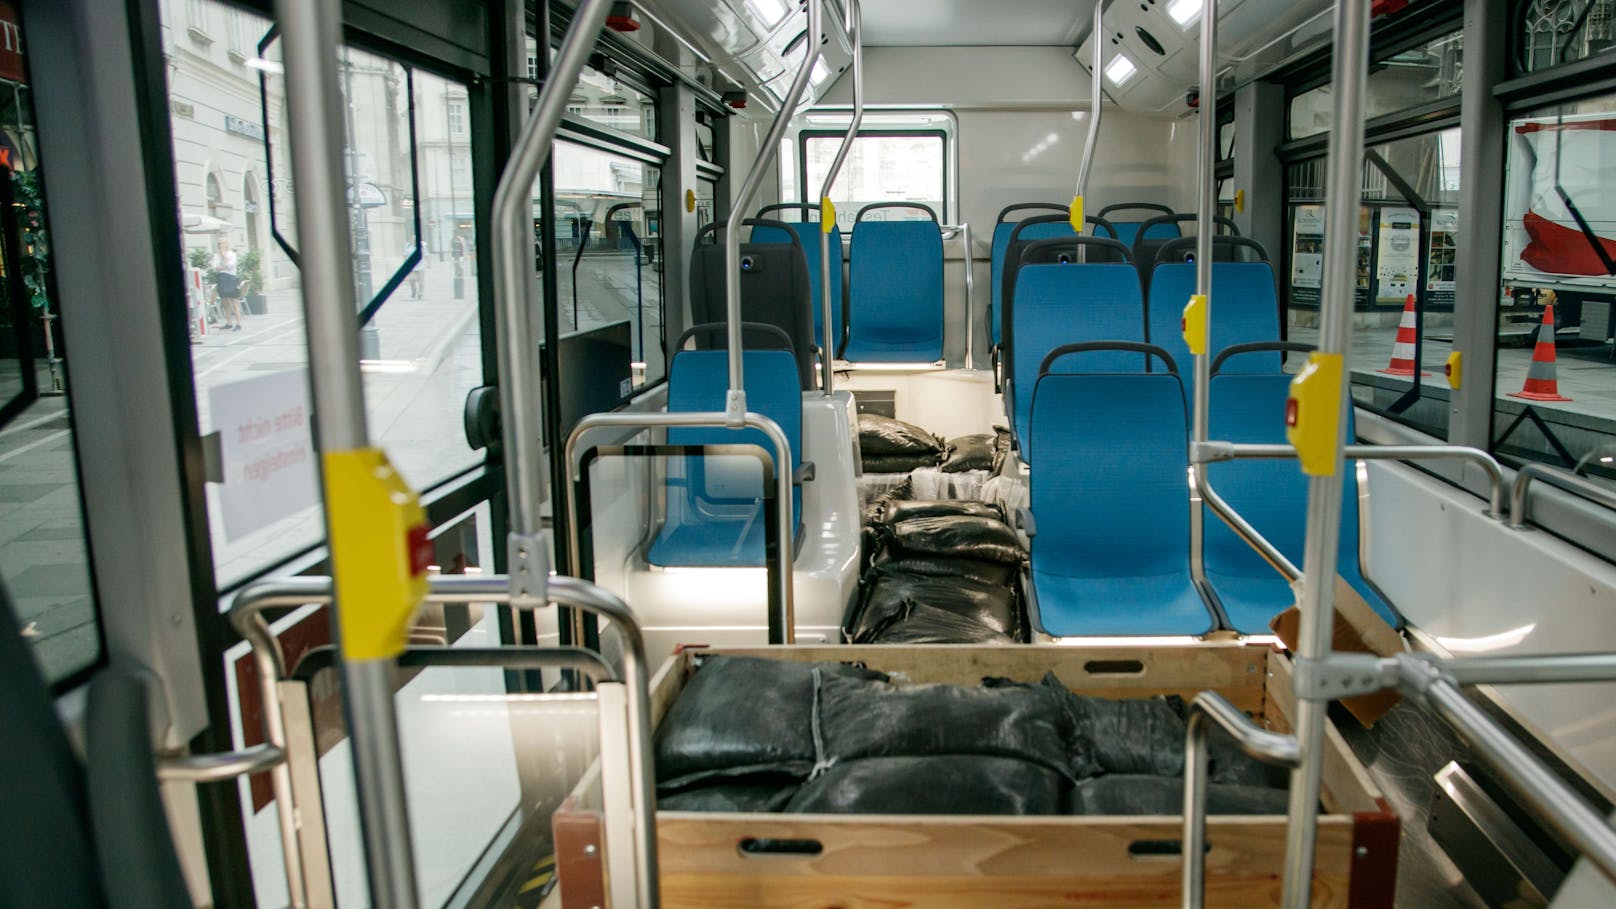 Statt Passagieren ist der Bus mit Sandsäcken gefüllt.